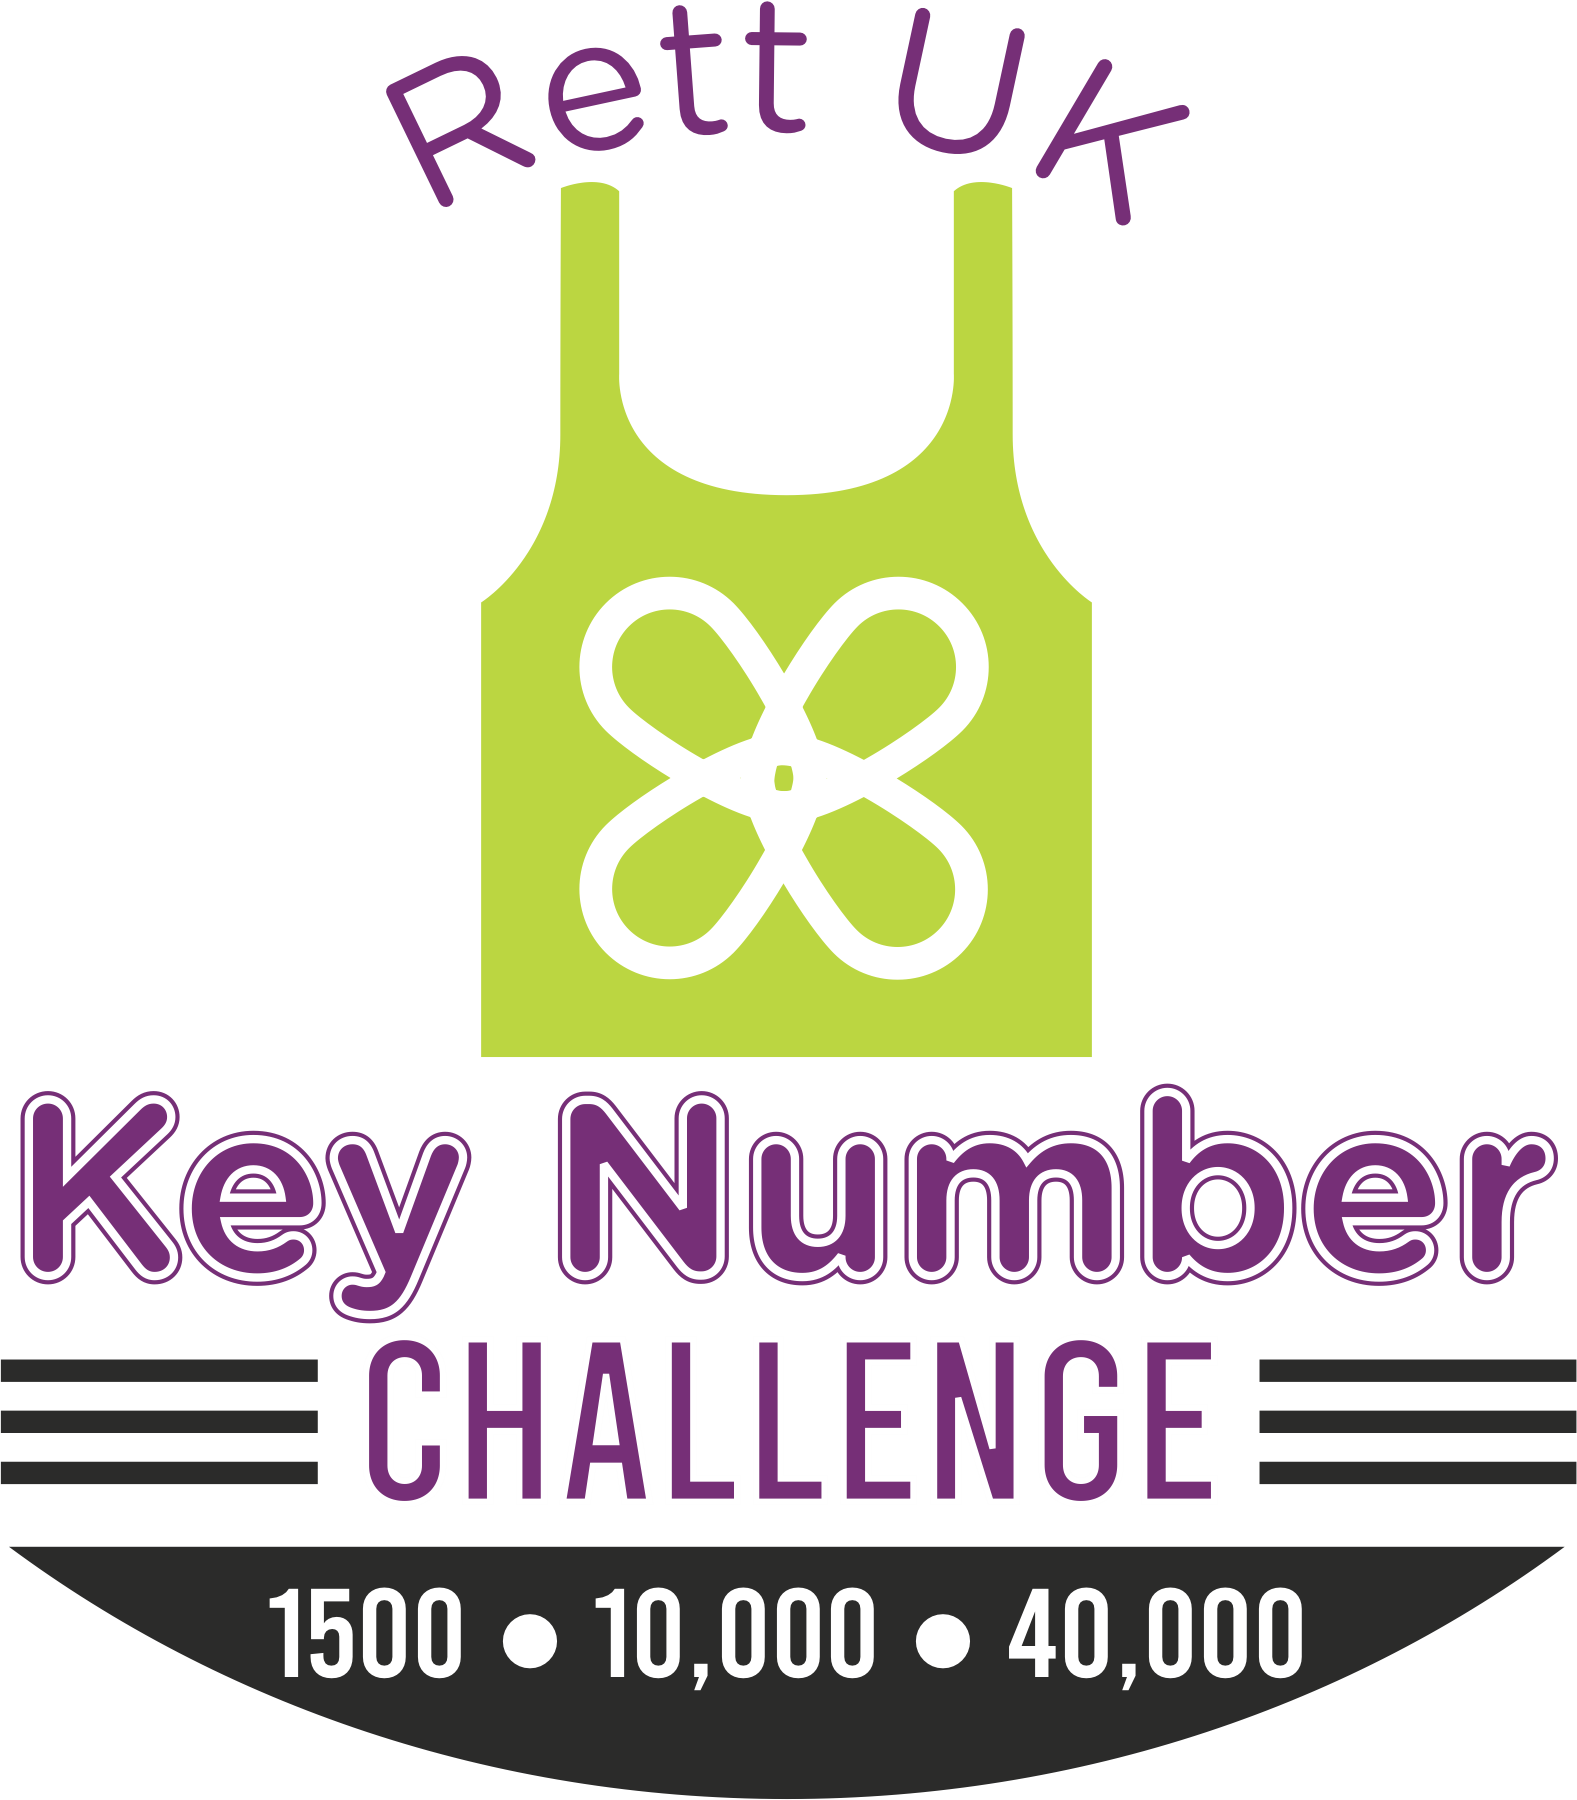 Key Number Challenge